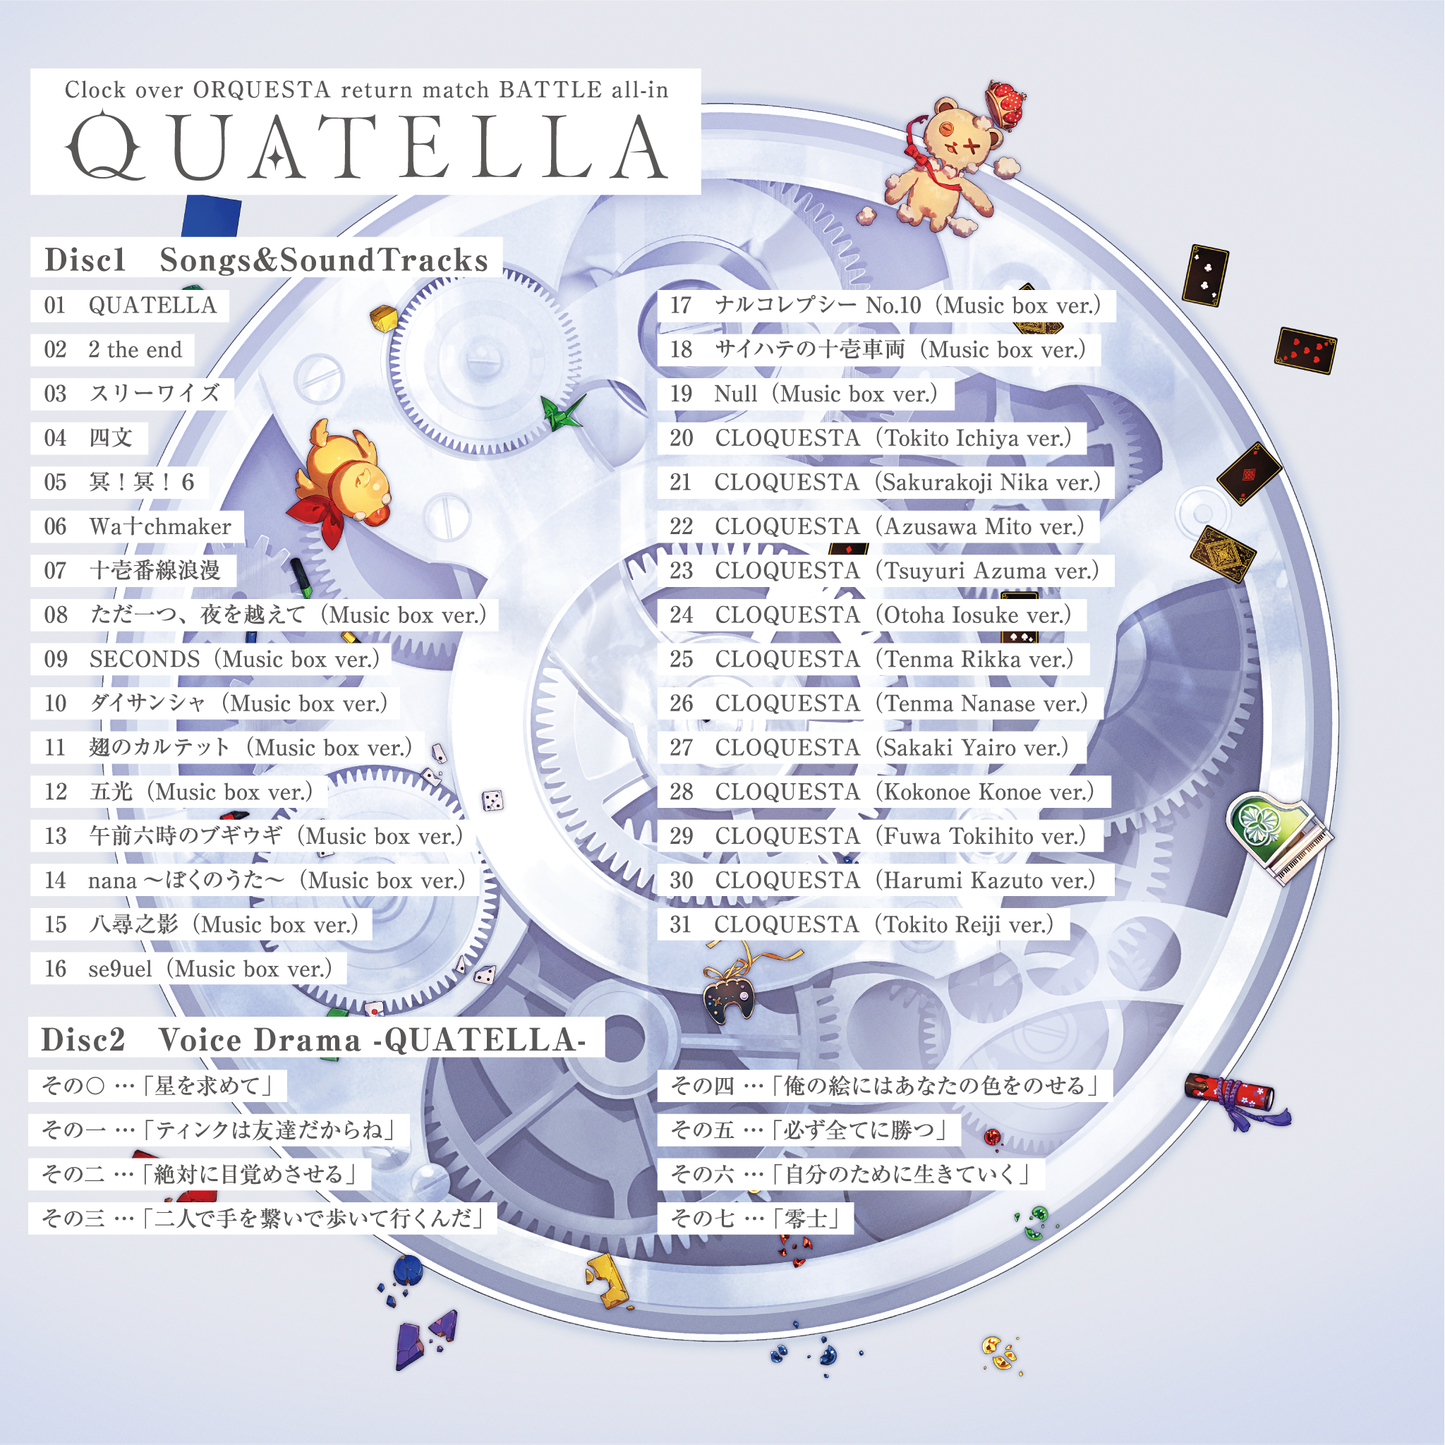 Clock over ORQUESTA return match BATTLE all-in 【QUATELLA】